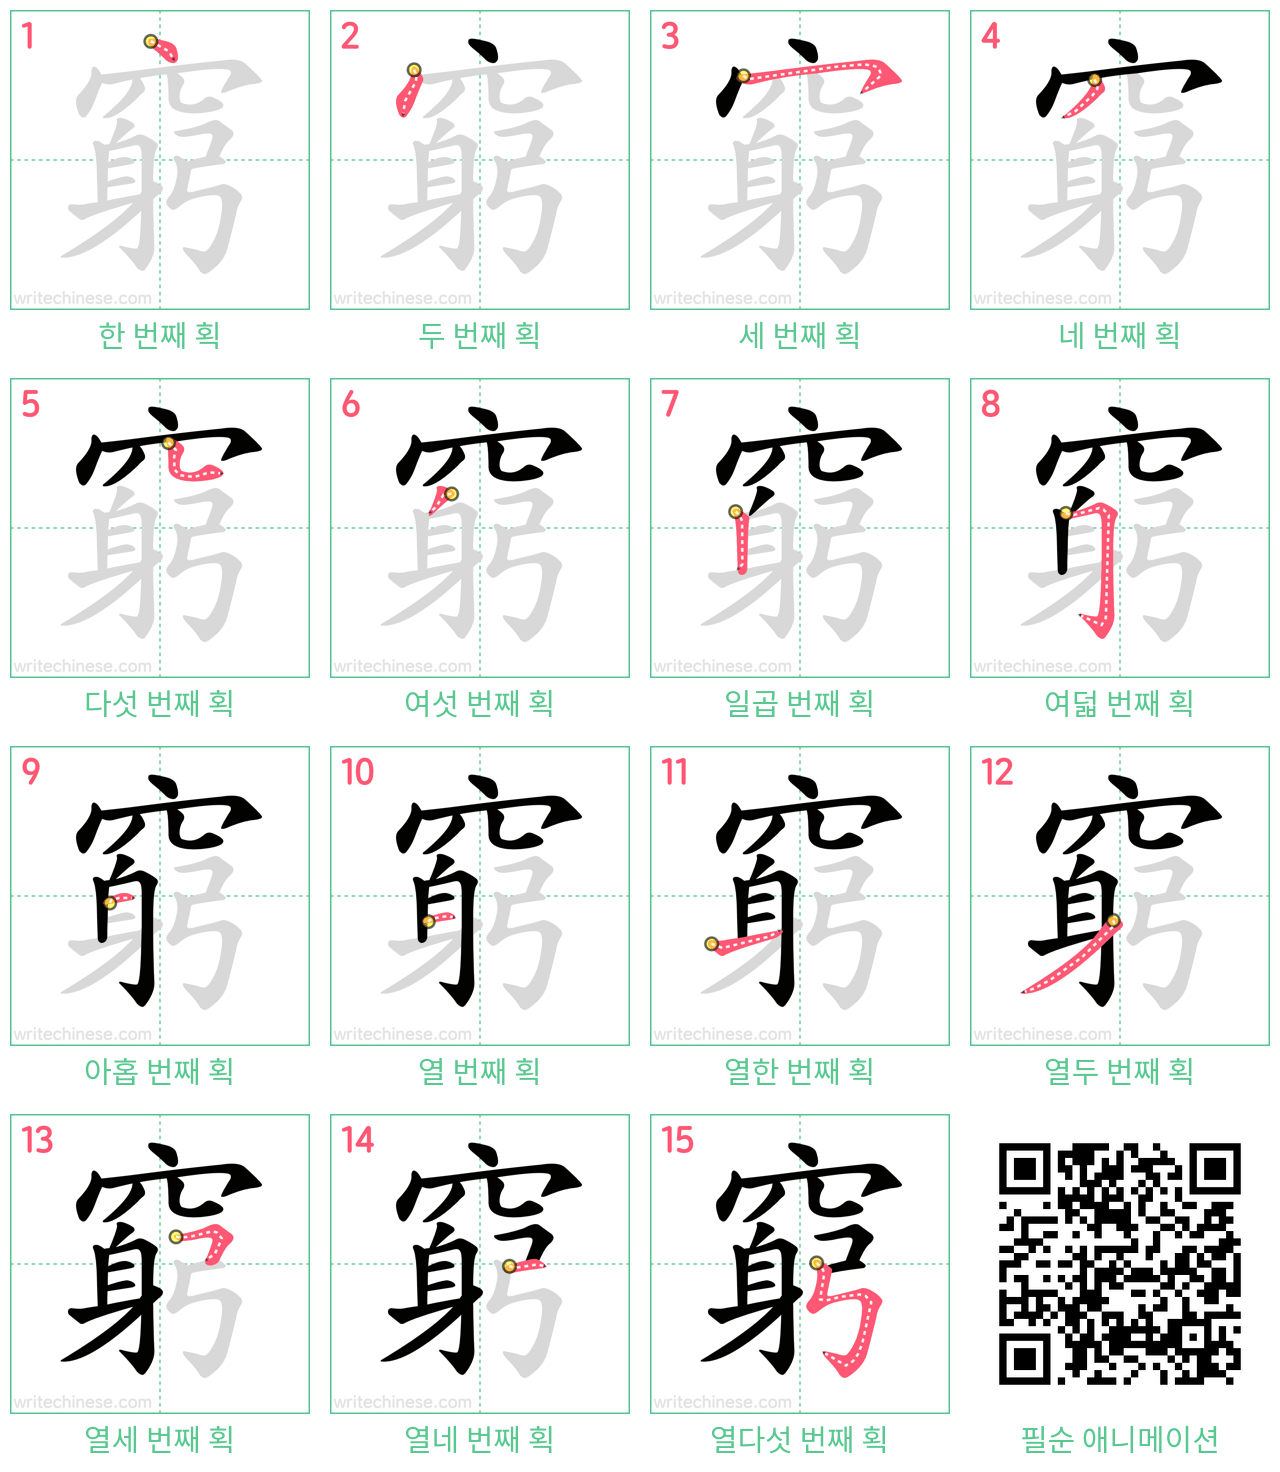 窮 step-by-step stroke order diagrams